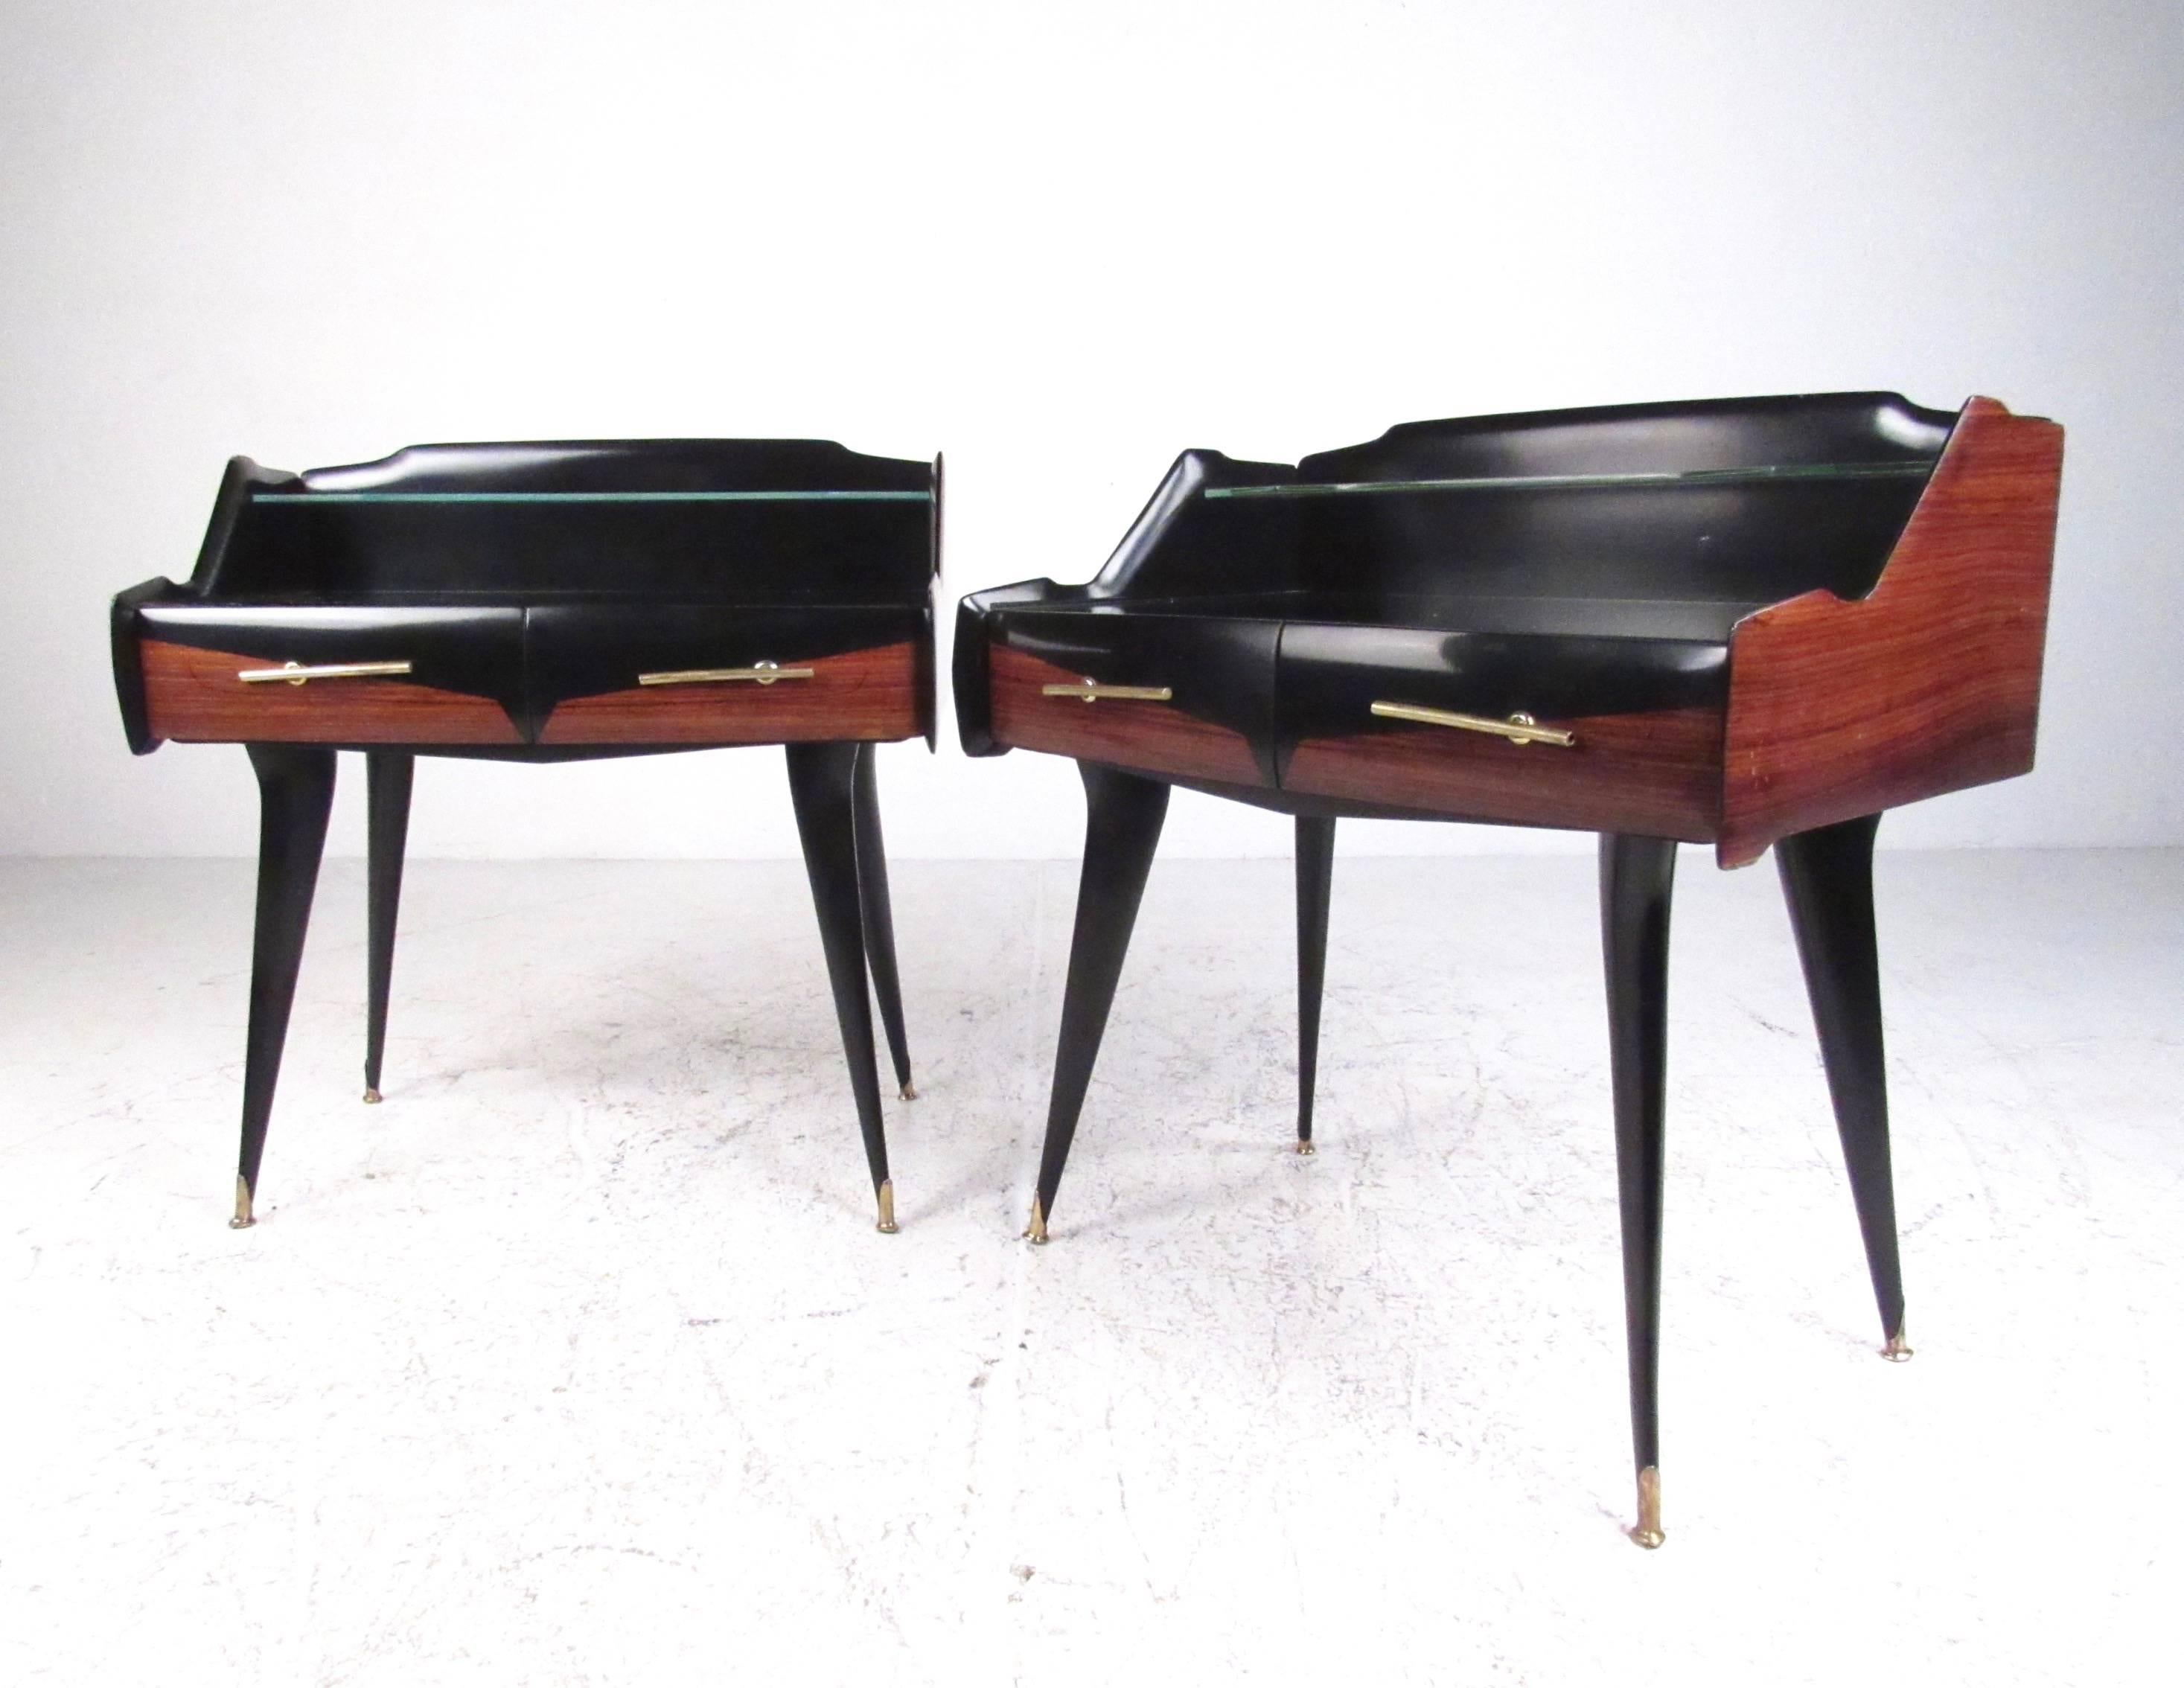 Dieses stilvolle Nachttischpaar aus den 1950er Jahren besticht durch sein elegantes, modernes italienisches Design und eignet sich hervorragend als zweistöckiger Nachttisch für jede Einrichtung. Die elegante Glasablage, der zweifarbige Rahmen und